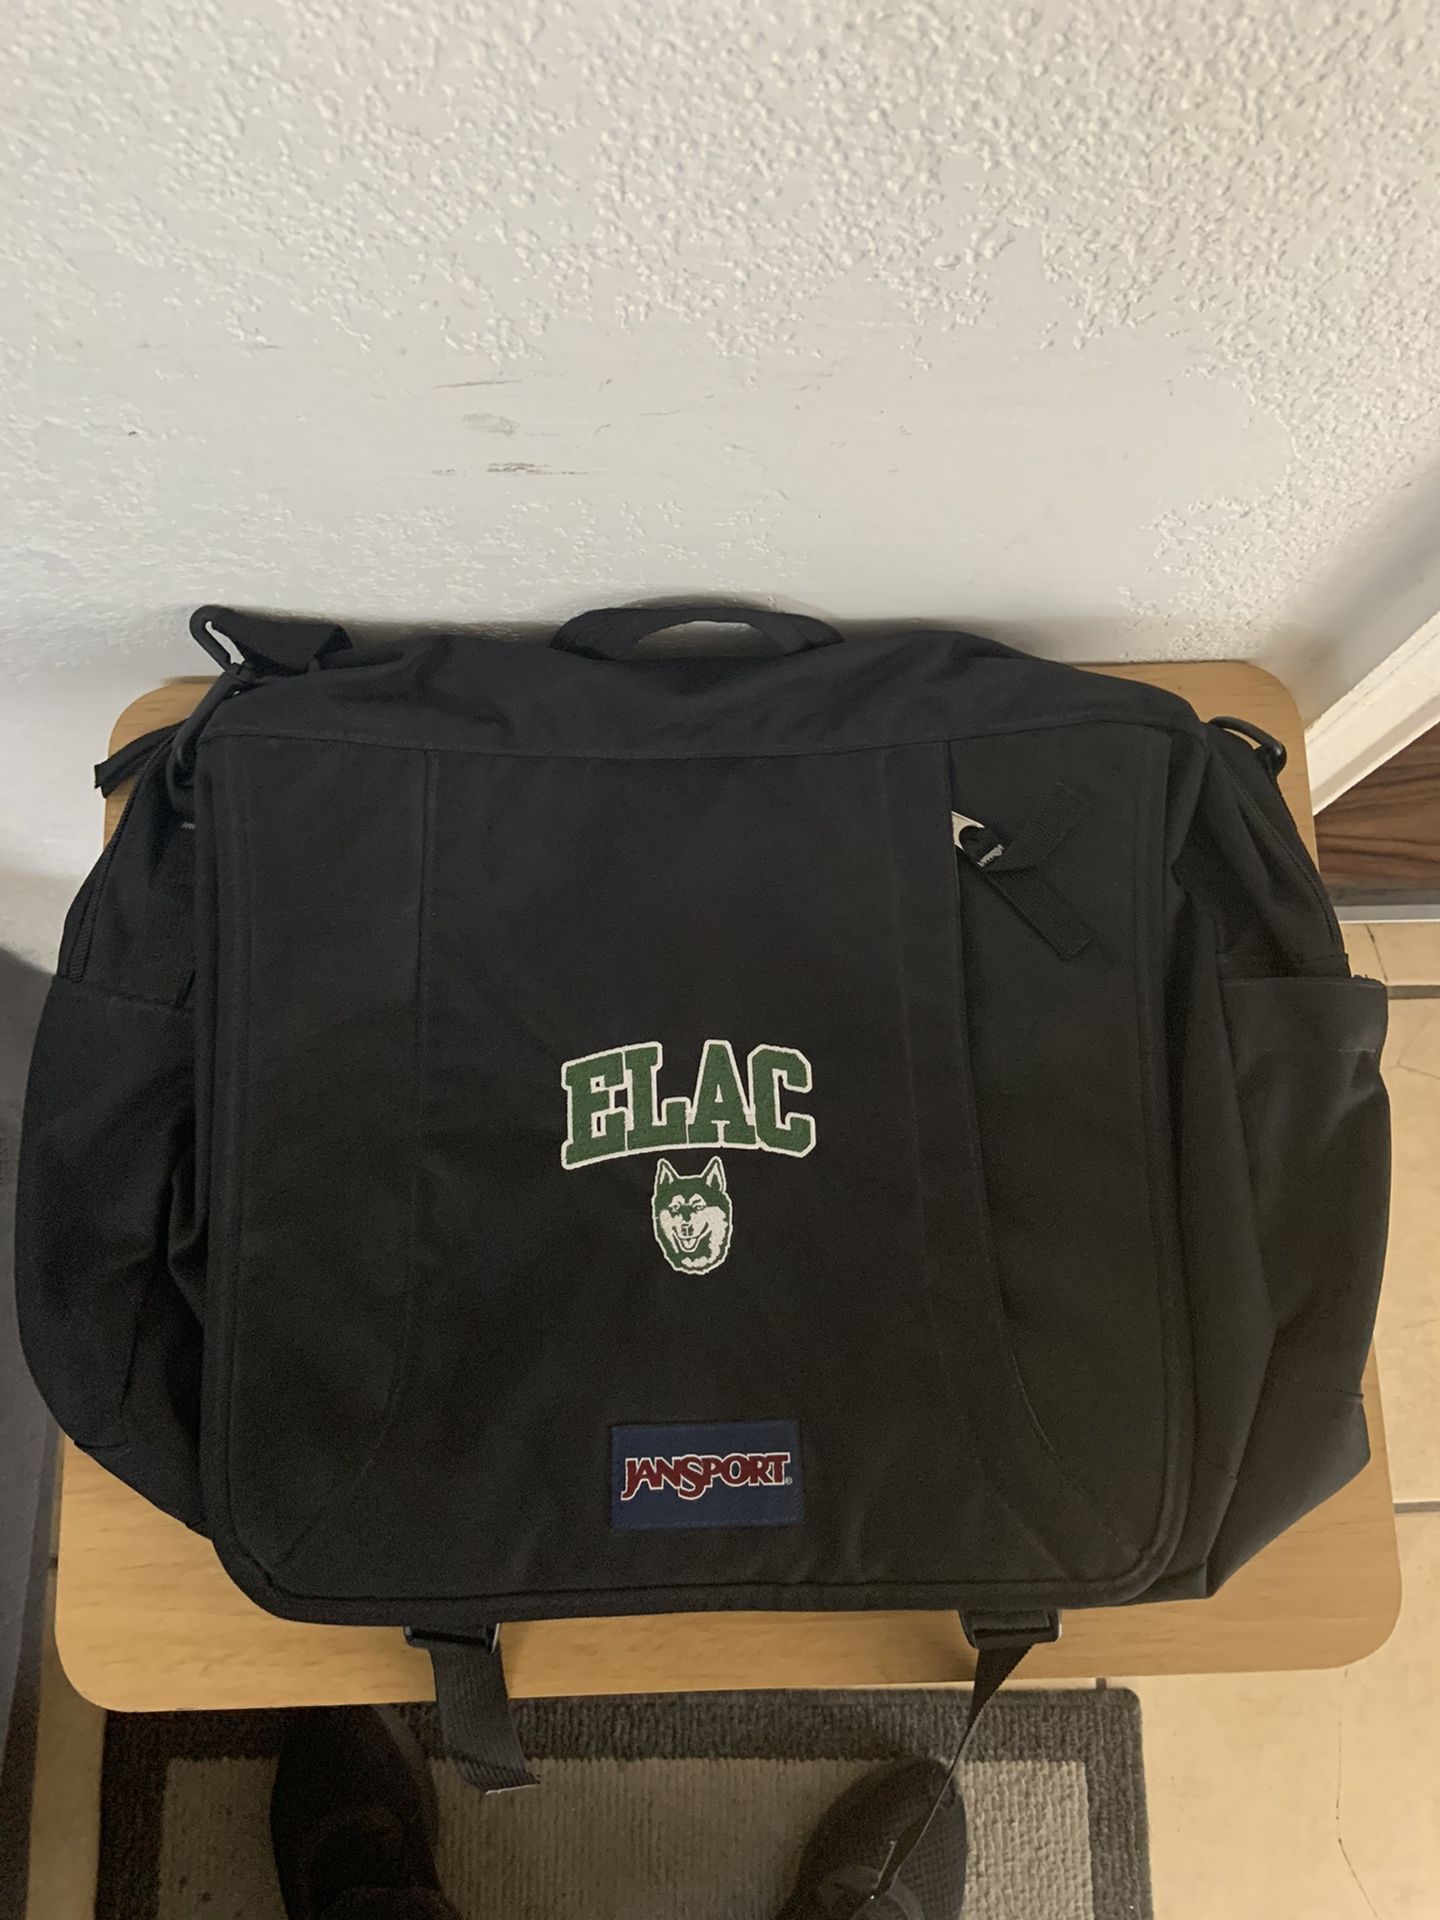 ELAC messenger bag $10